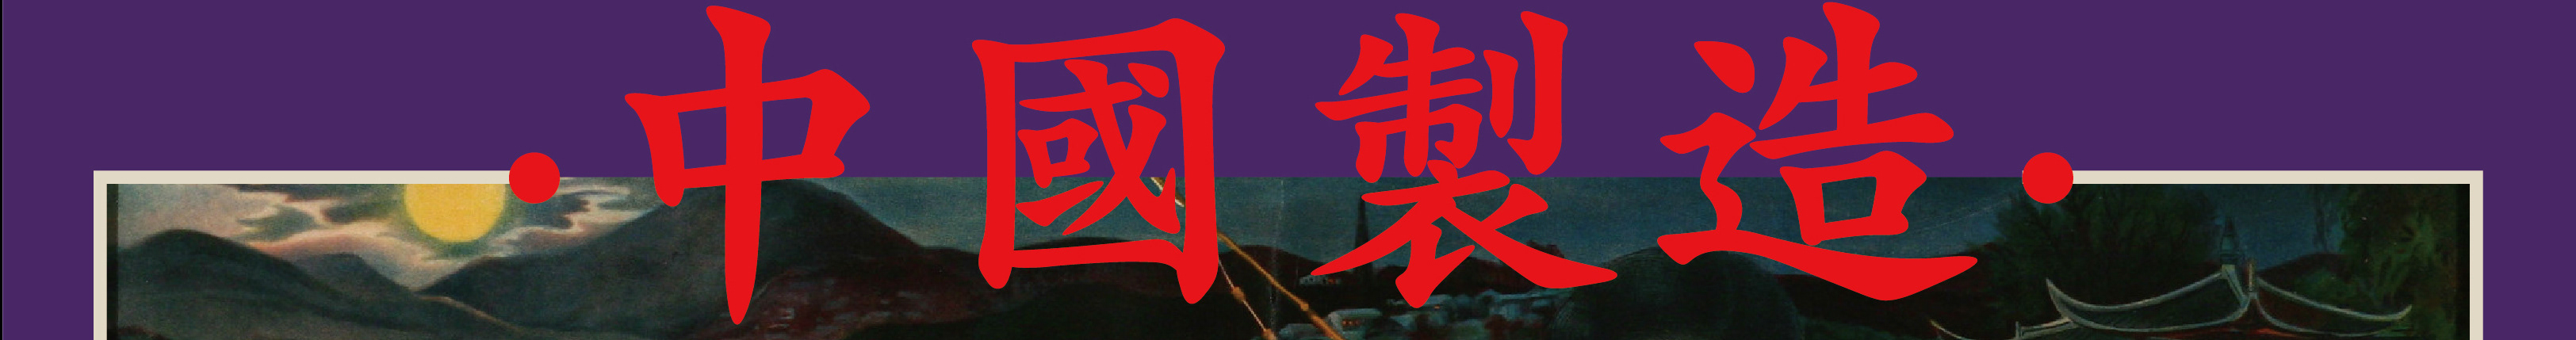 毕 鑫's profile banner